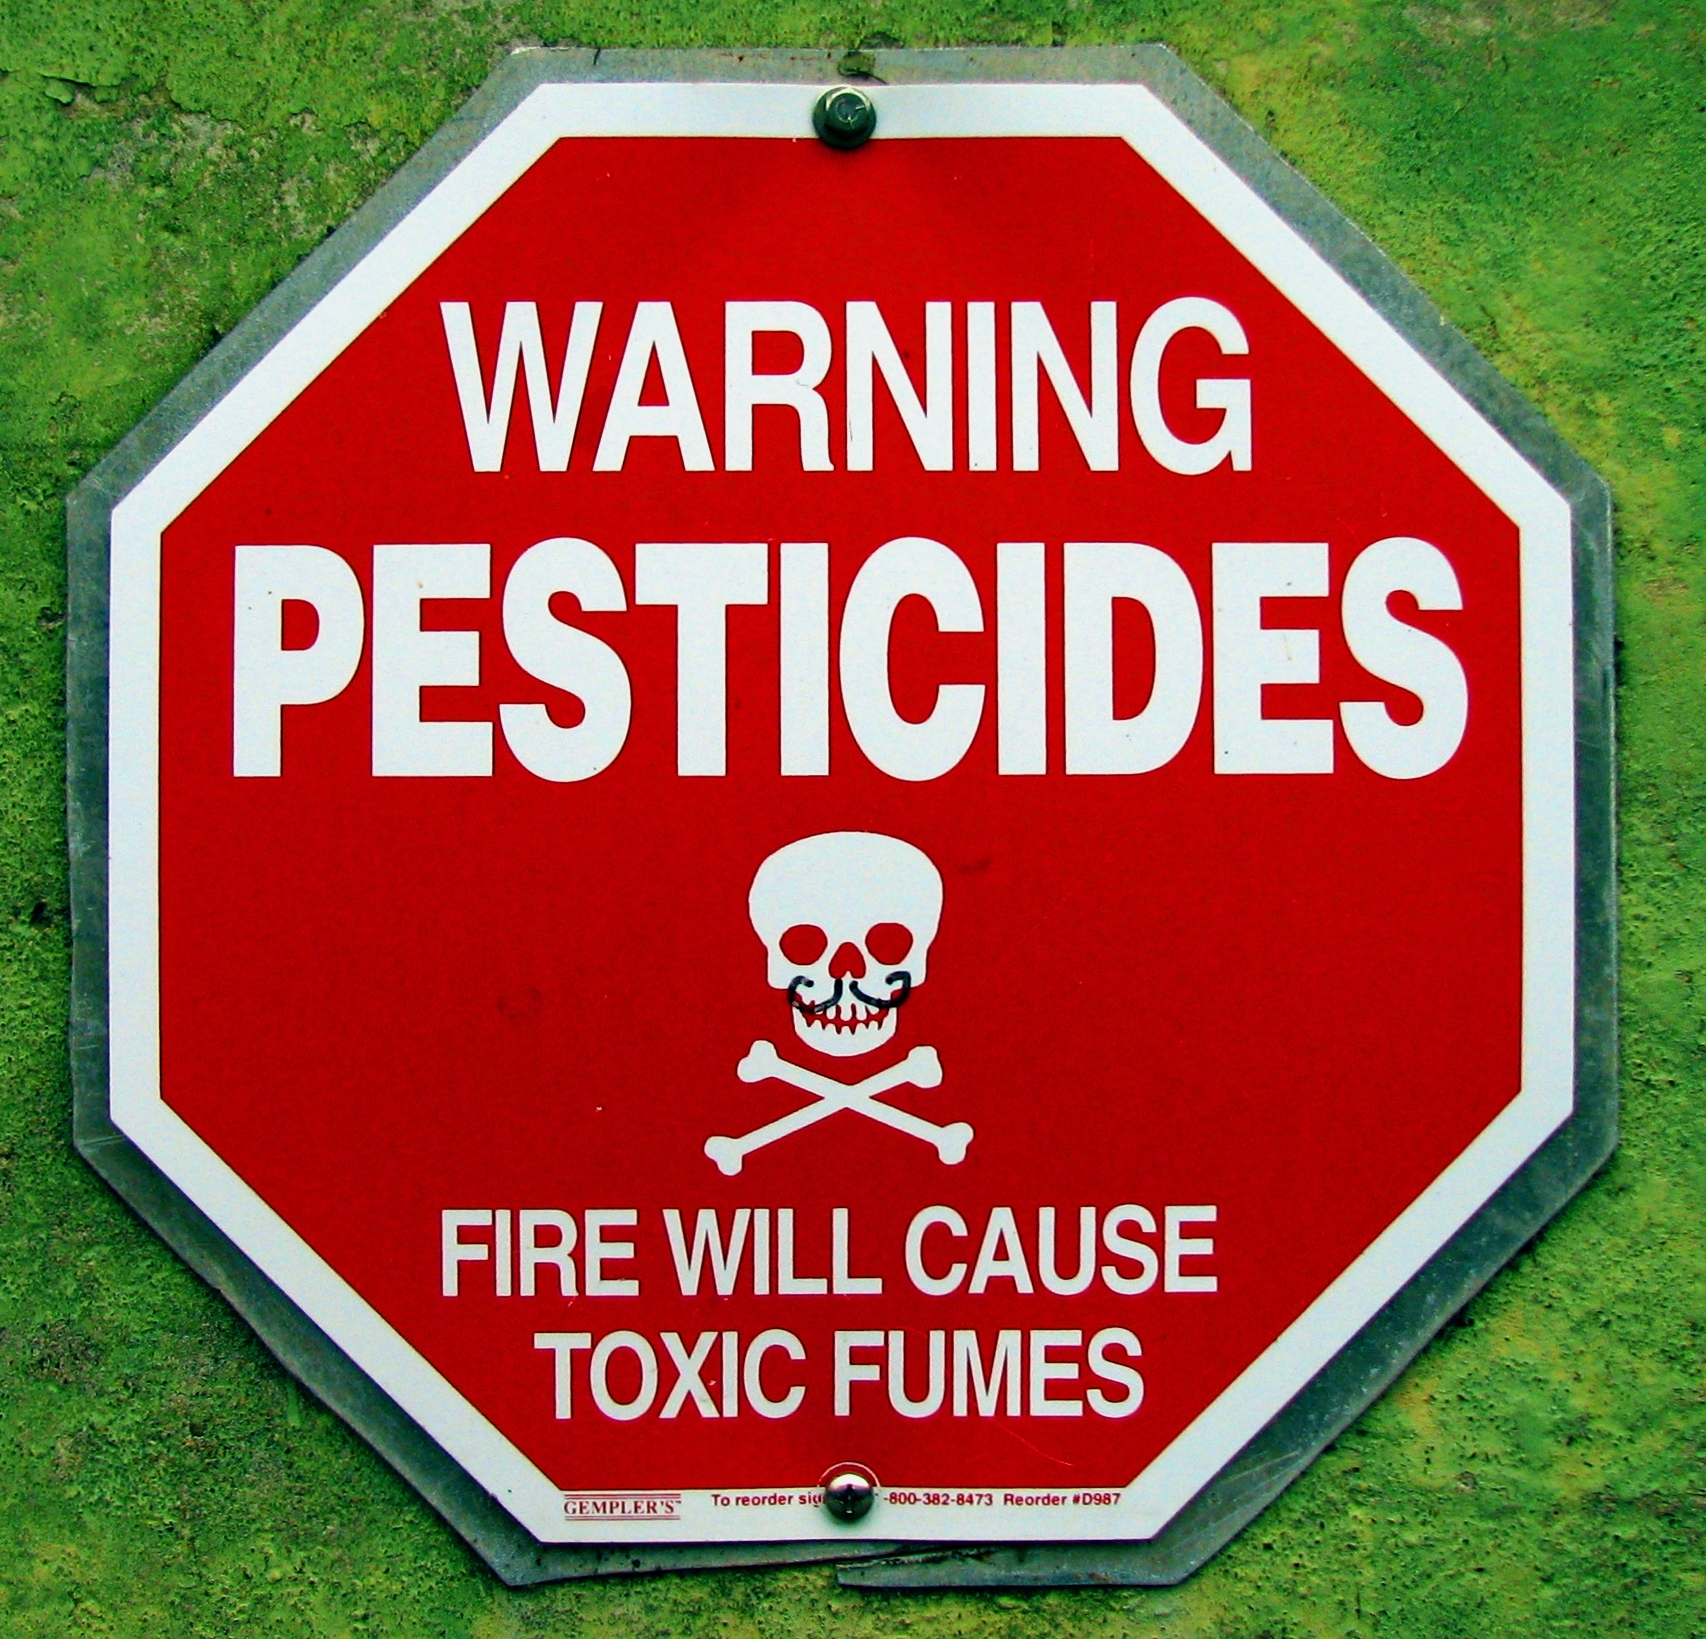 A Monsanto-ügy: rákkeltő szerért lobbiztak az Európai Unióban